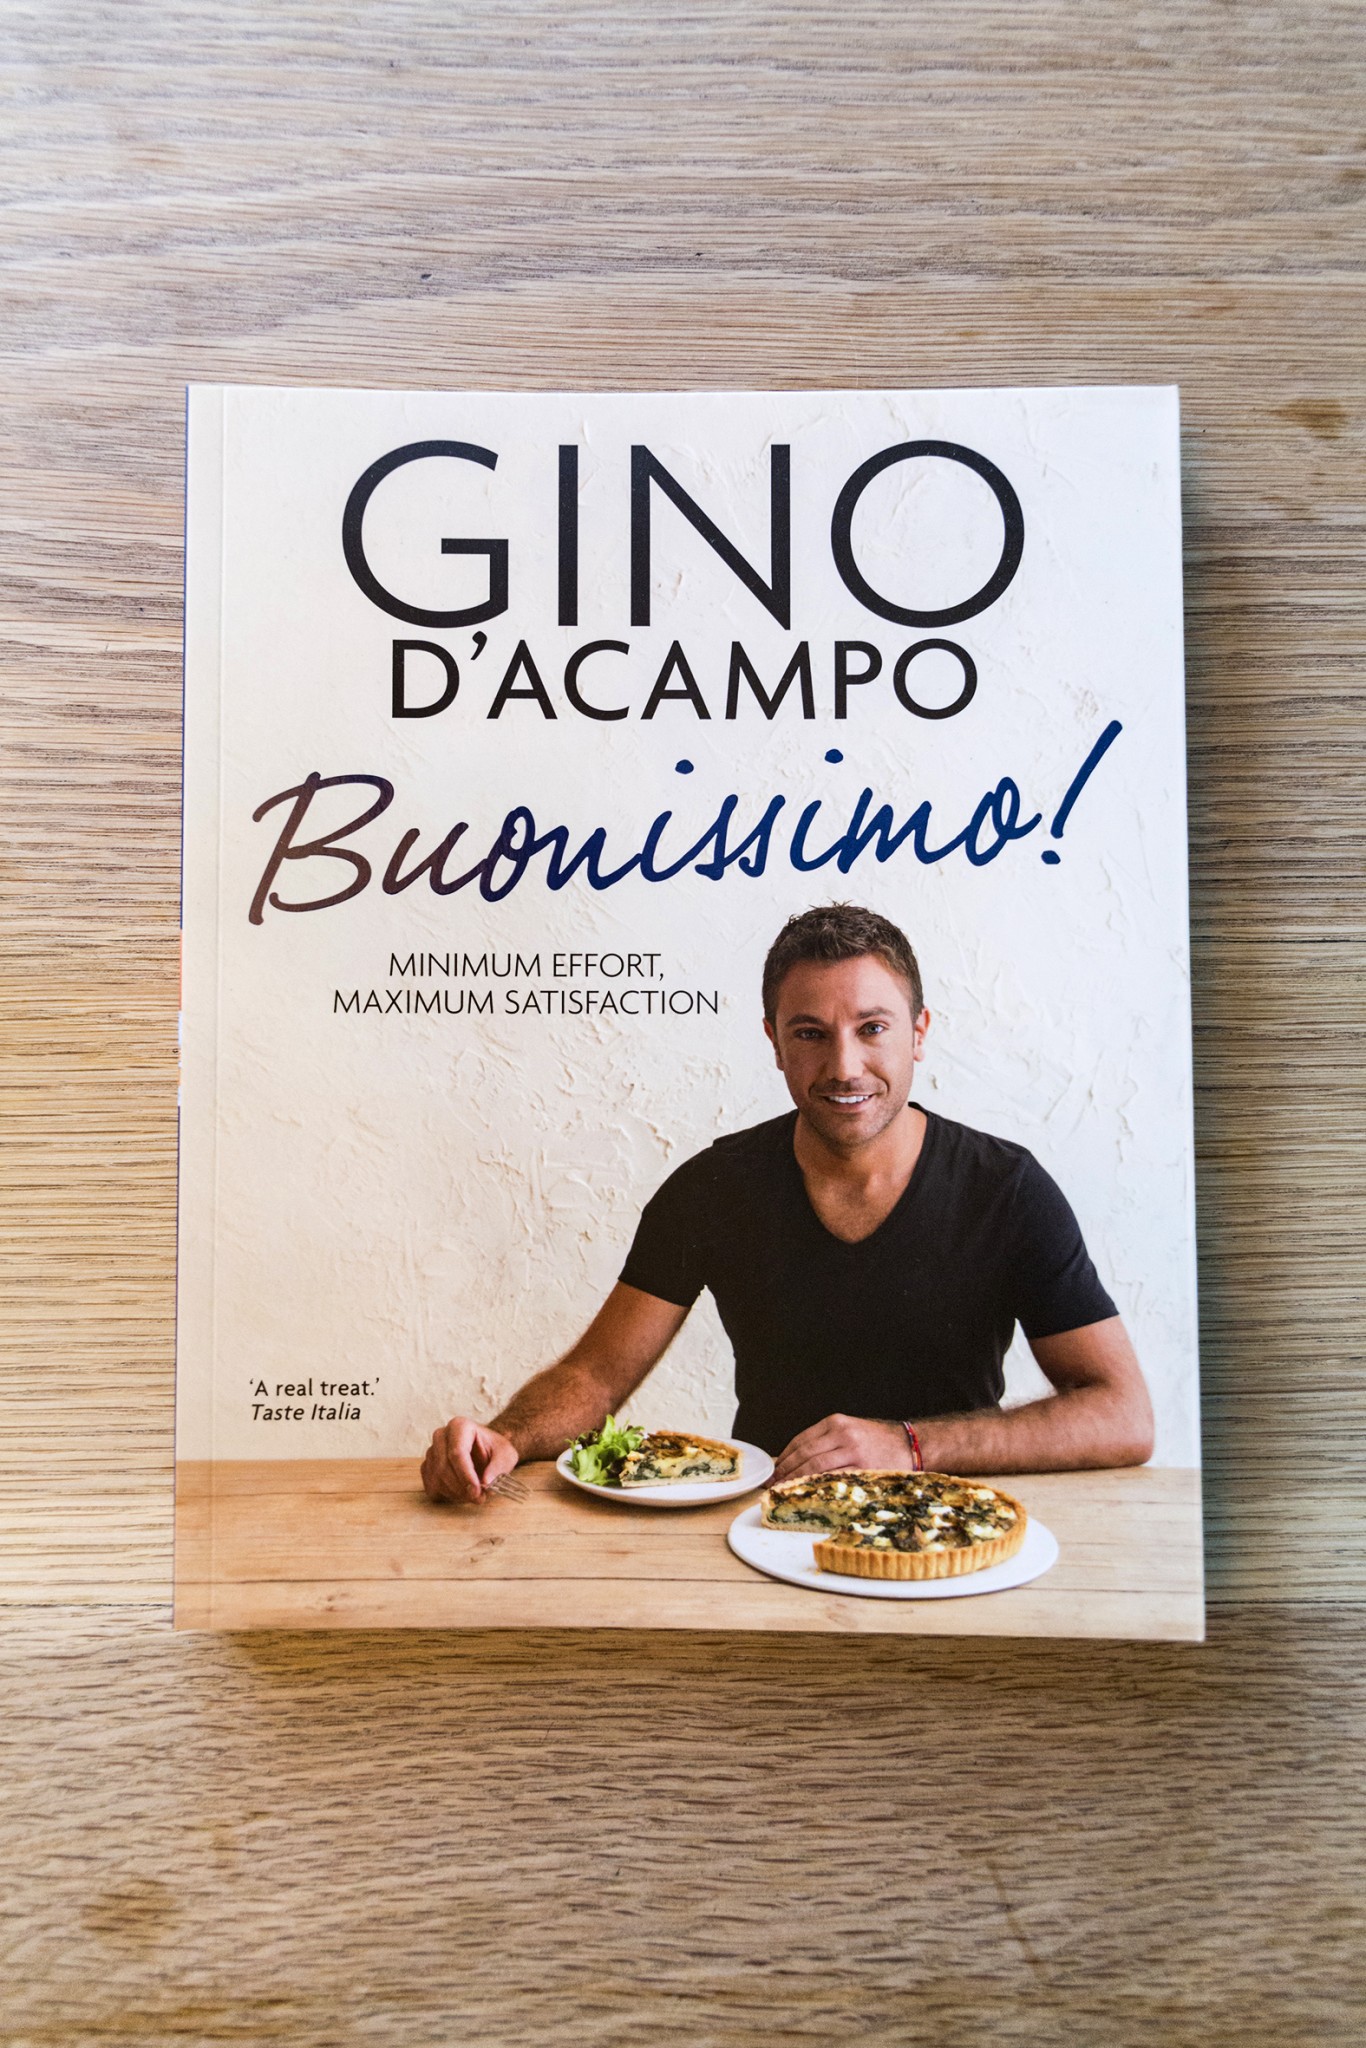 Gino D’acampo: Prison To TV Chef